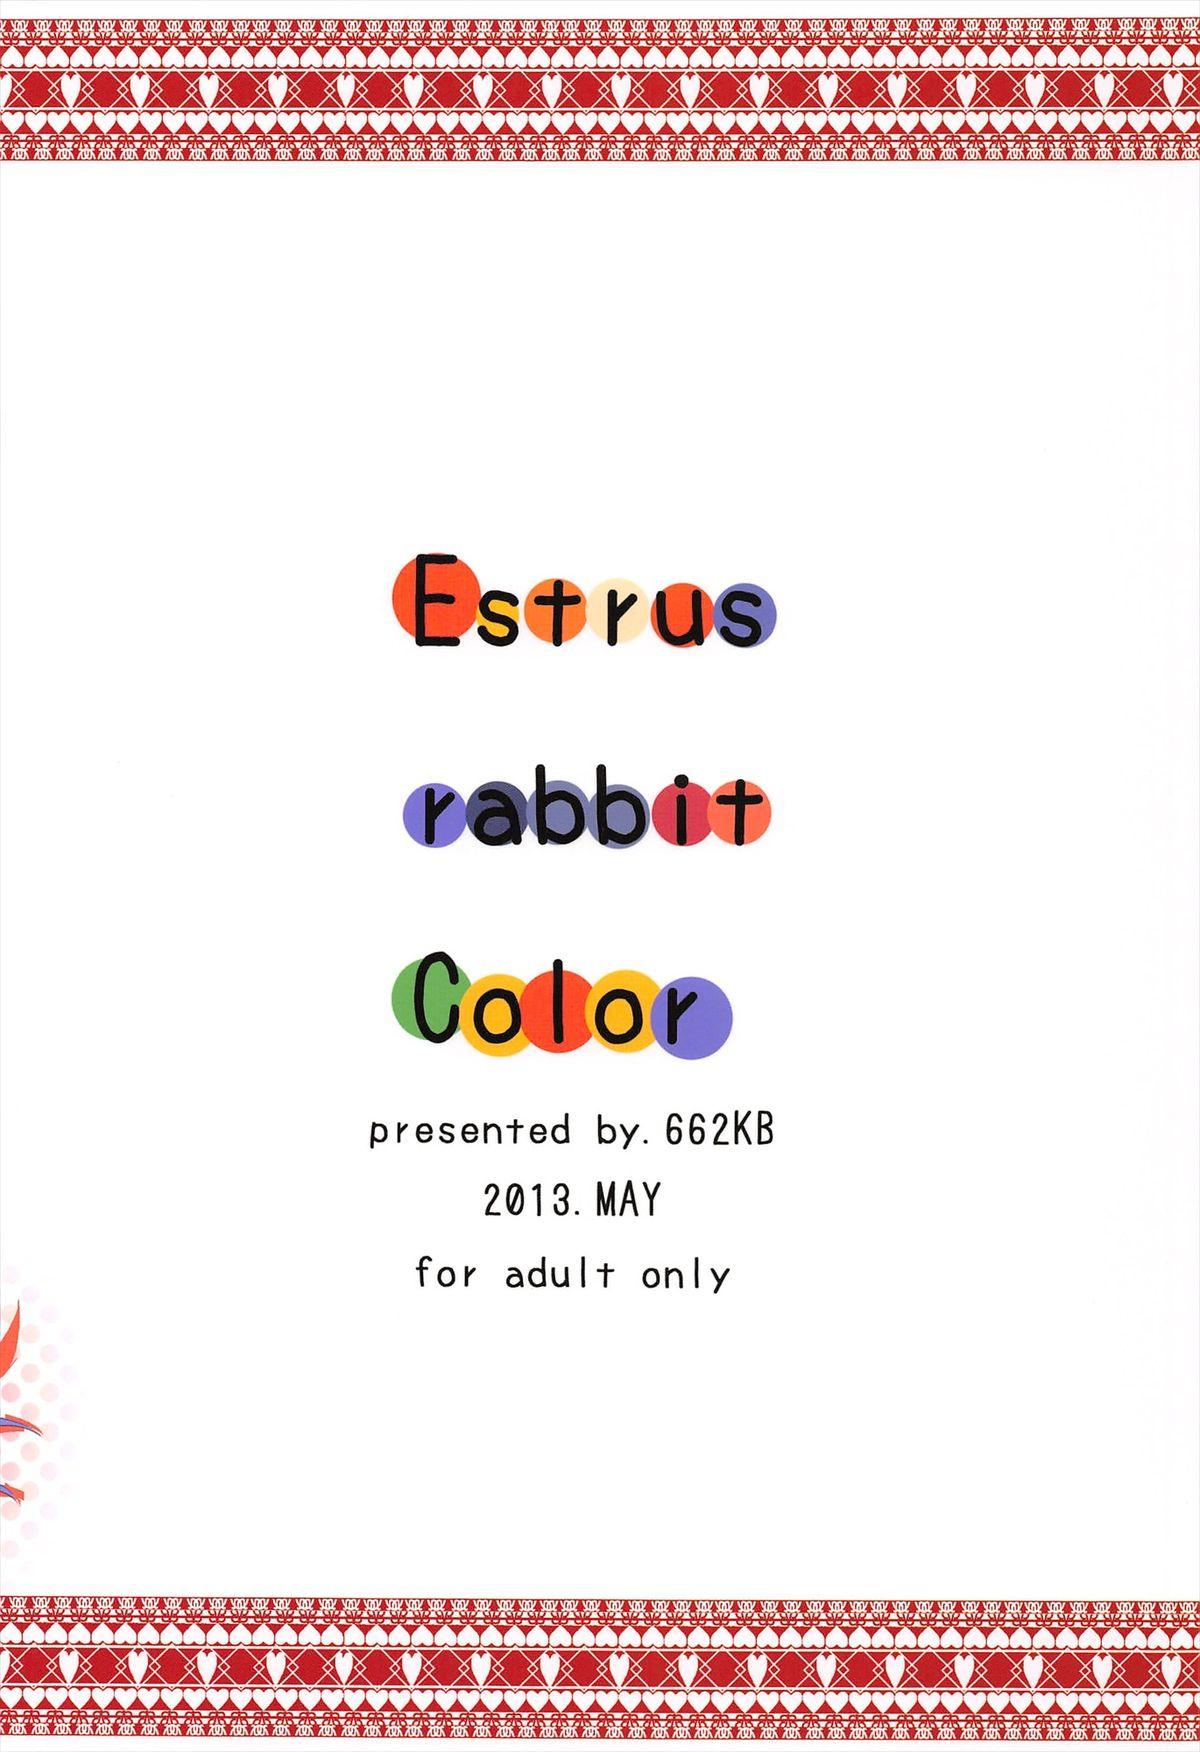 Estrus rabbit Color 19